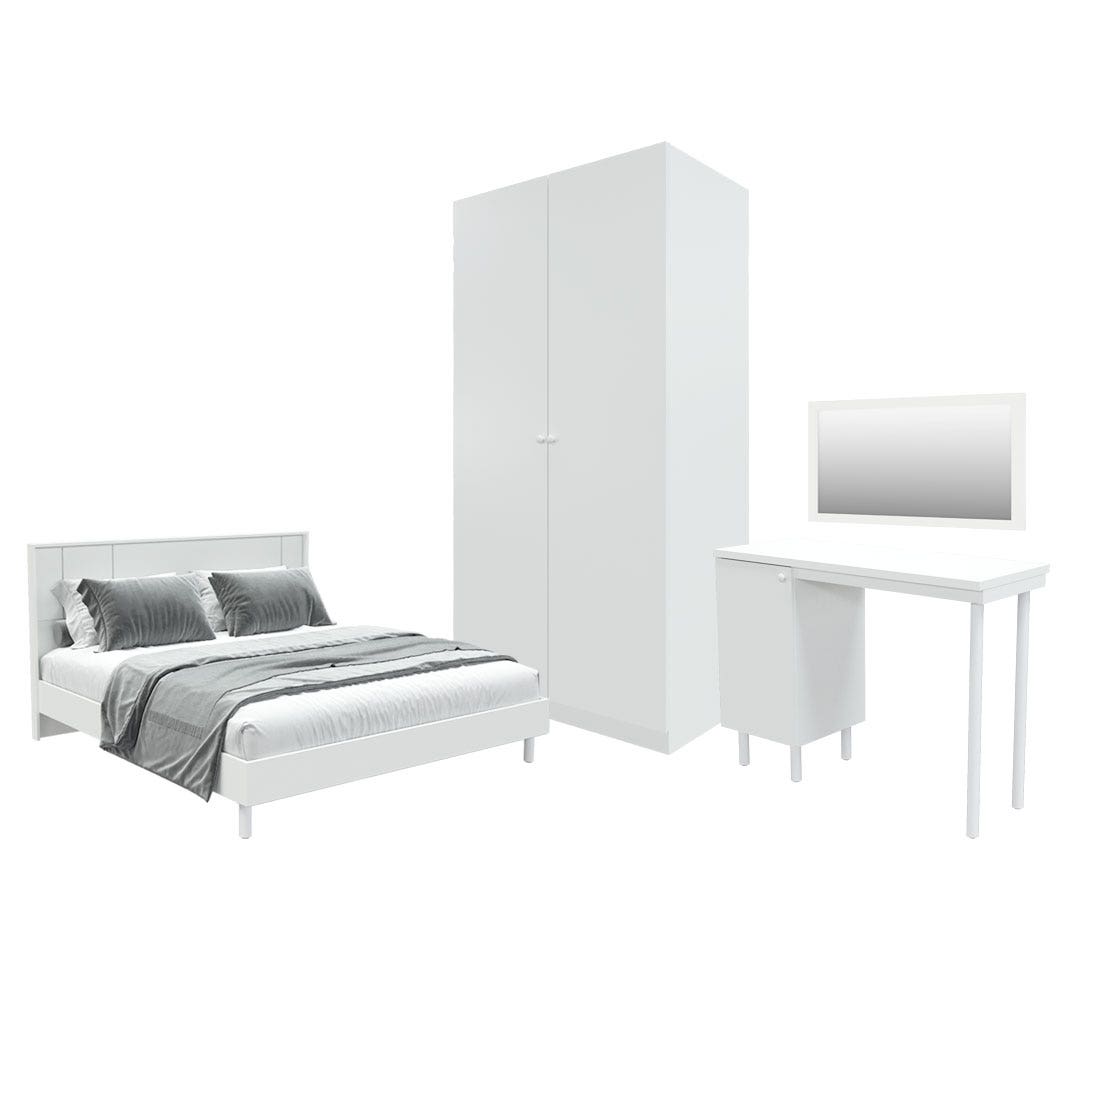 ชุดห้องนอน ขนาด 6 ฟุต รุ่น Pearliz ขาเหล็ก และ ตู้ Blox ขนาด 100 ซม. พร้อมโต๊ะทำงาน สีขาว มิดกรอส01